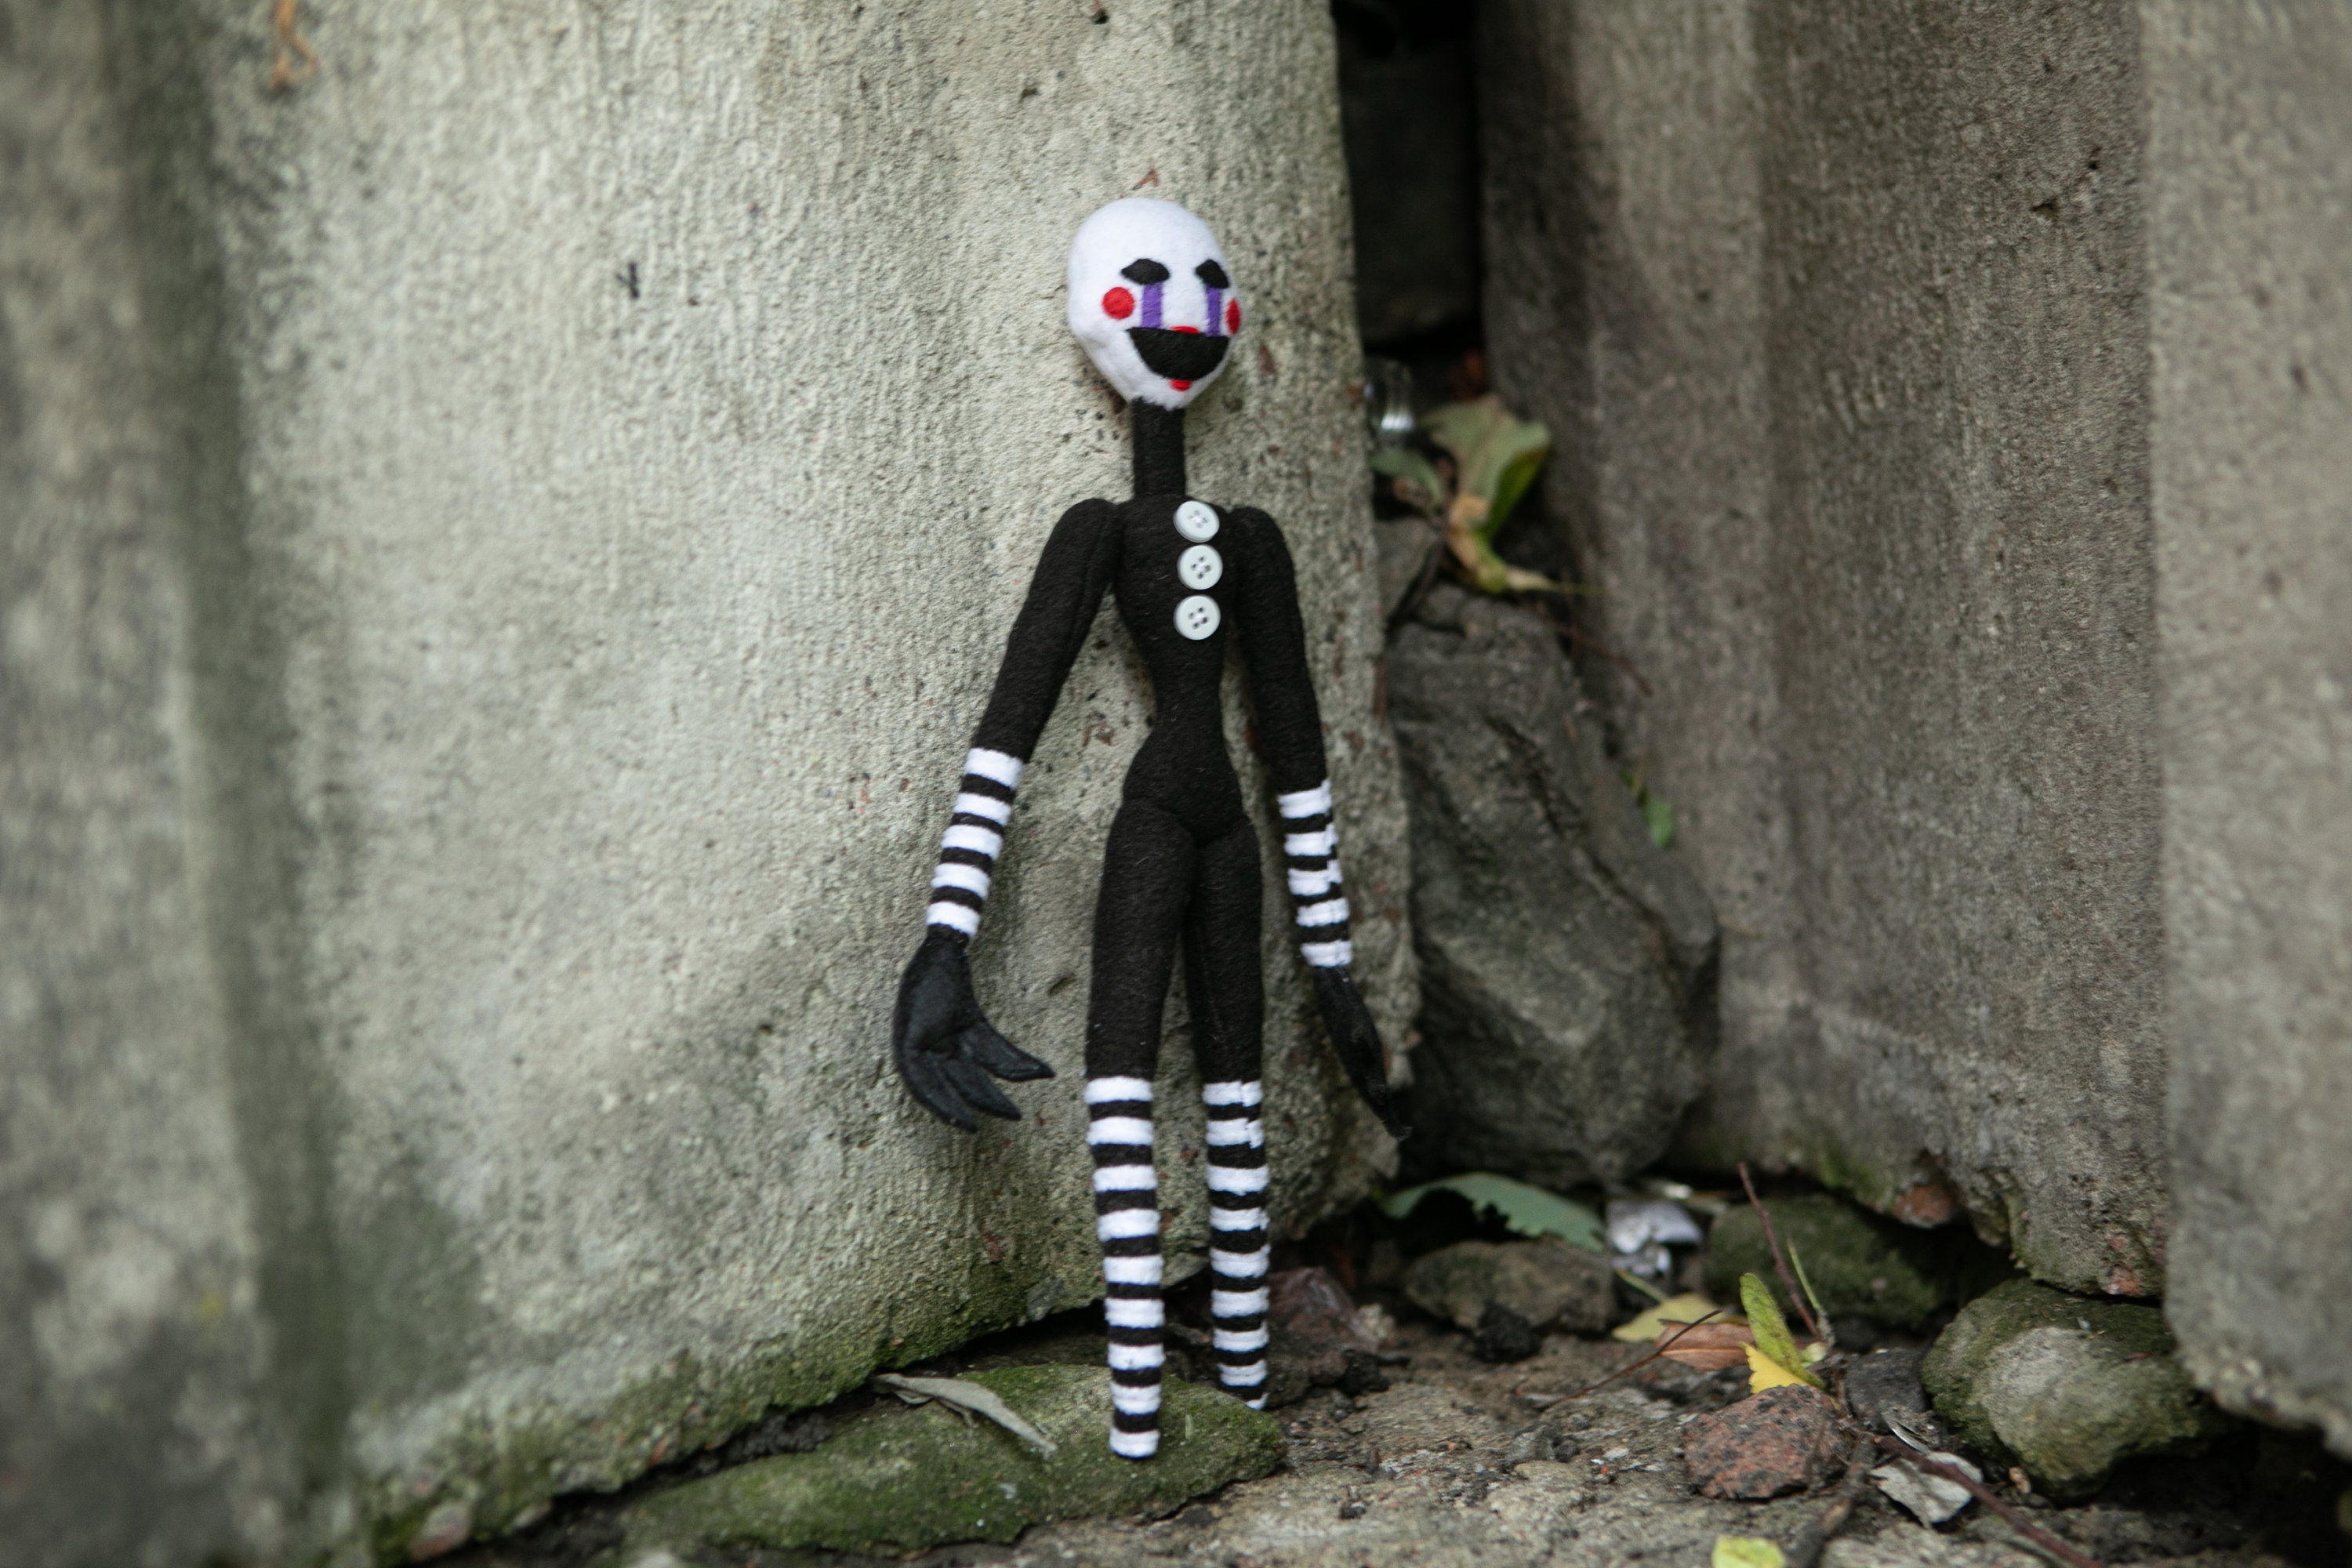 Marionnette en peluche FNAF inspirée, Puppet FNAF peluche, poupée douce  faite à la main, 11,8 po, réalisée sur commande -  France